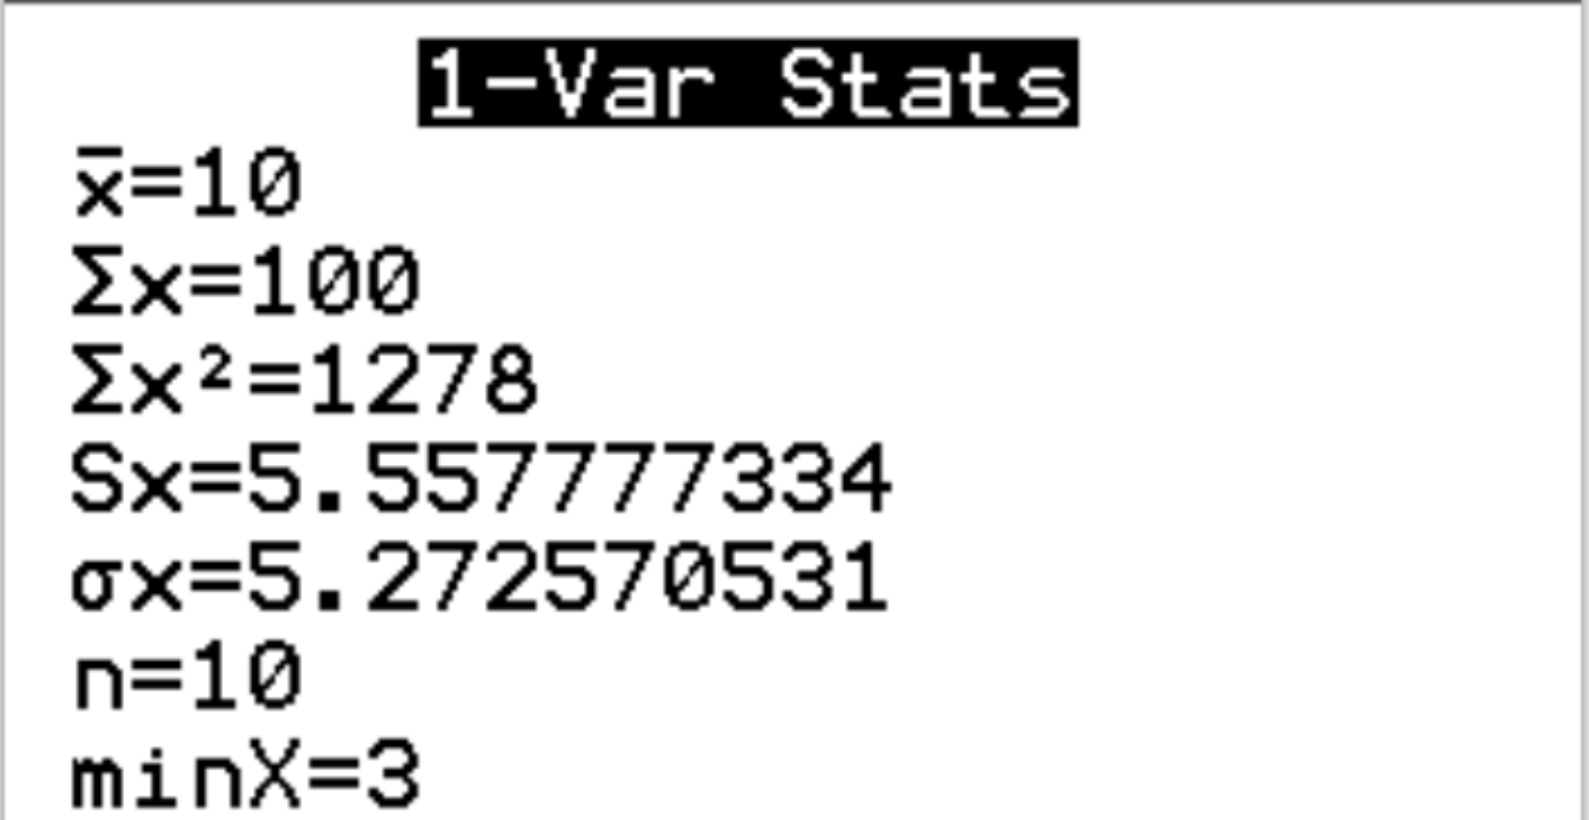 Вывод статистики 1-Var на калькуляторе TI-84